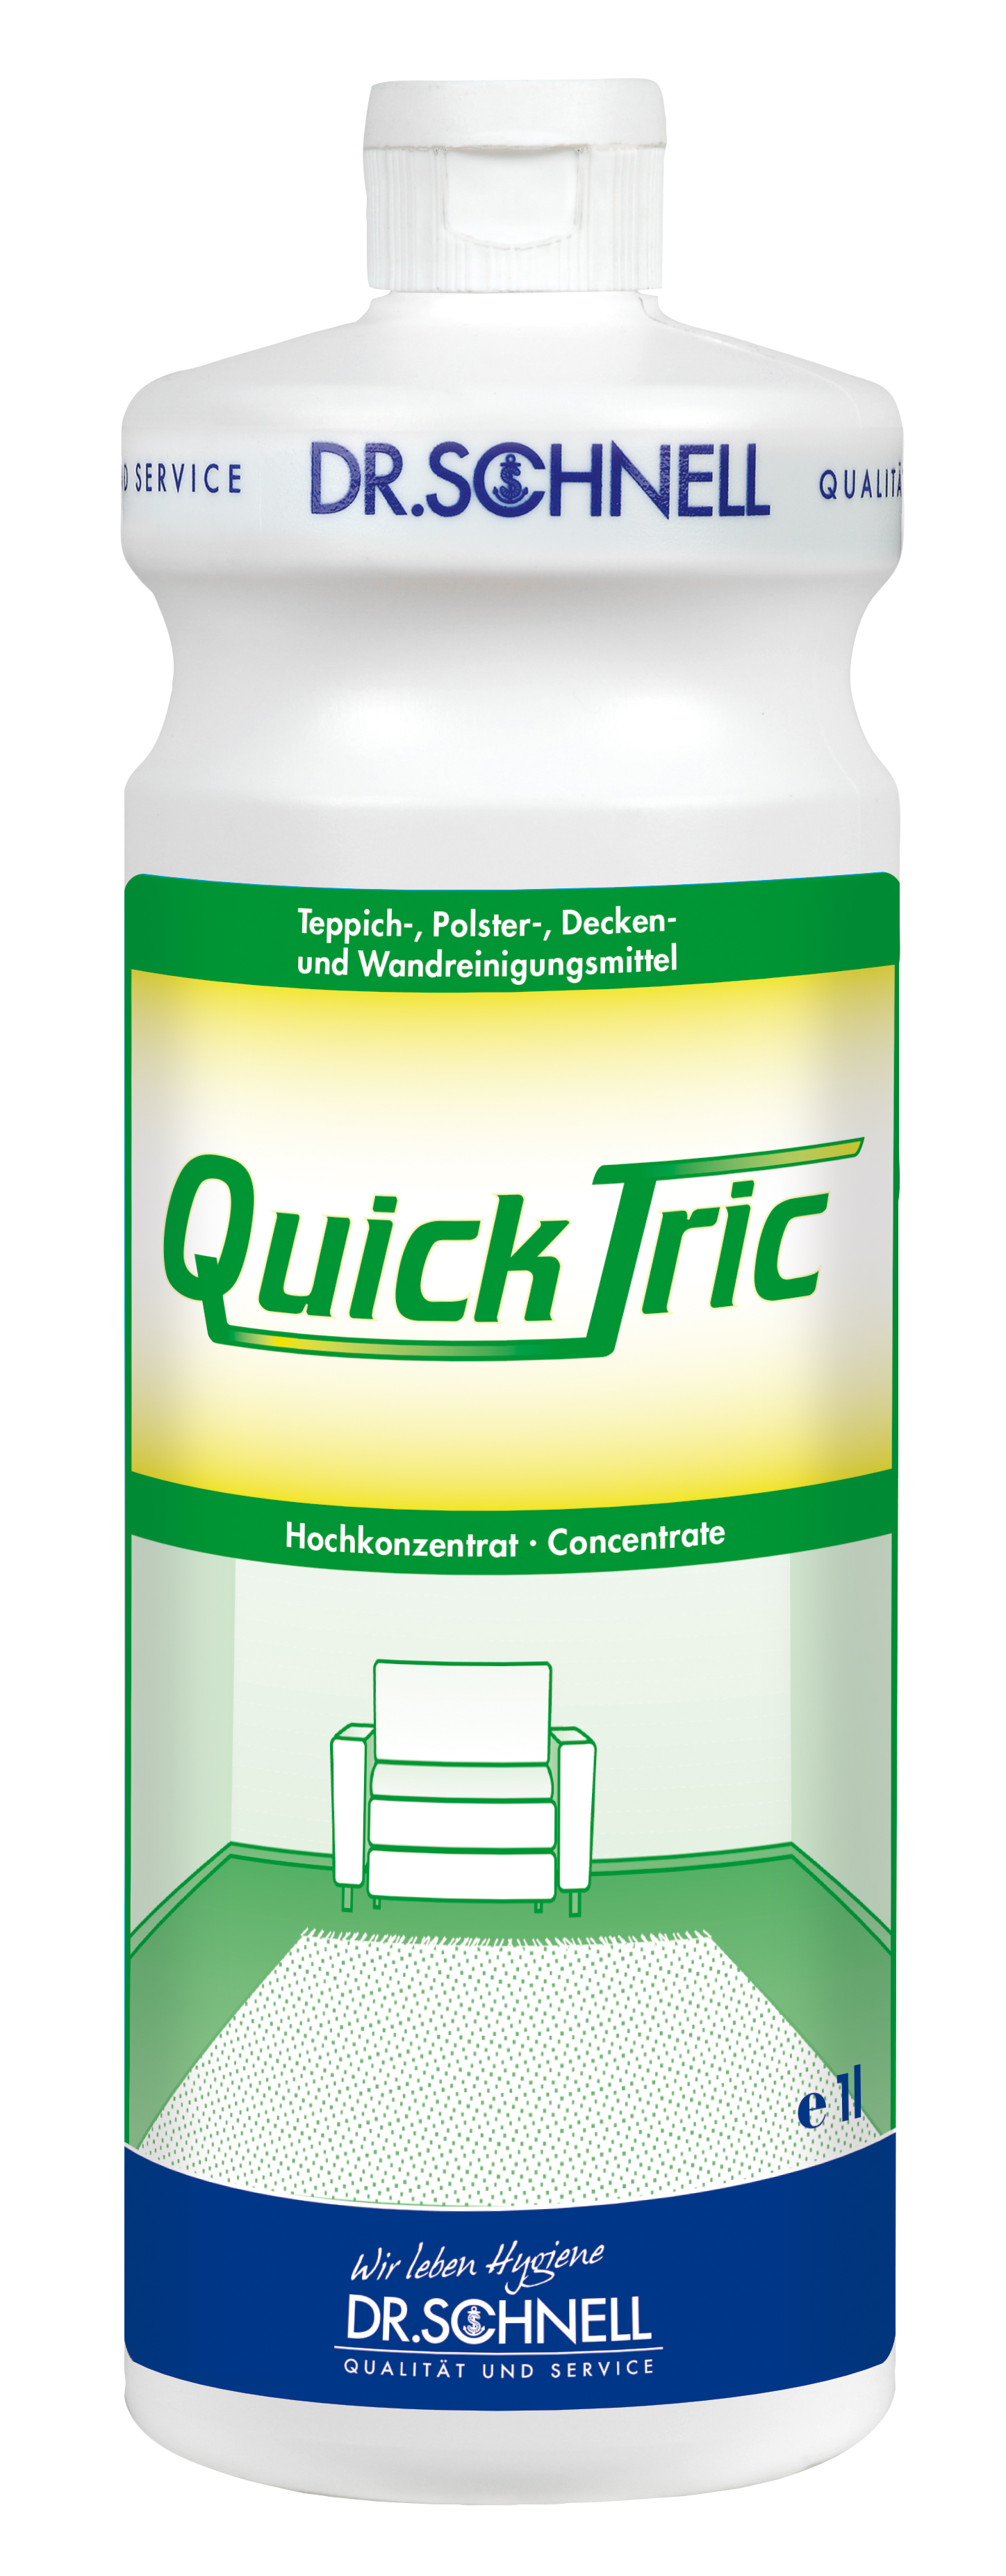 QUICK TRIC, 1 Liter Teppich- und,Polsterreiniger, Dr. Schnell